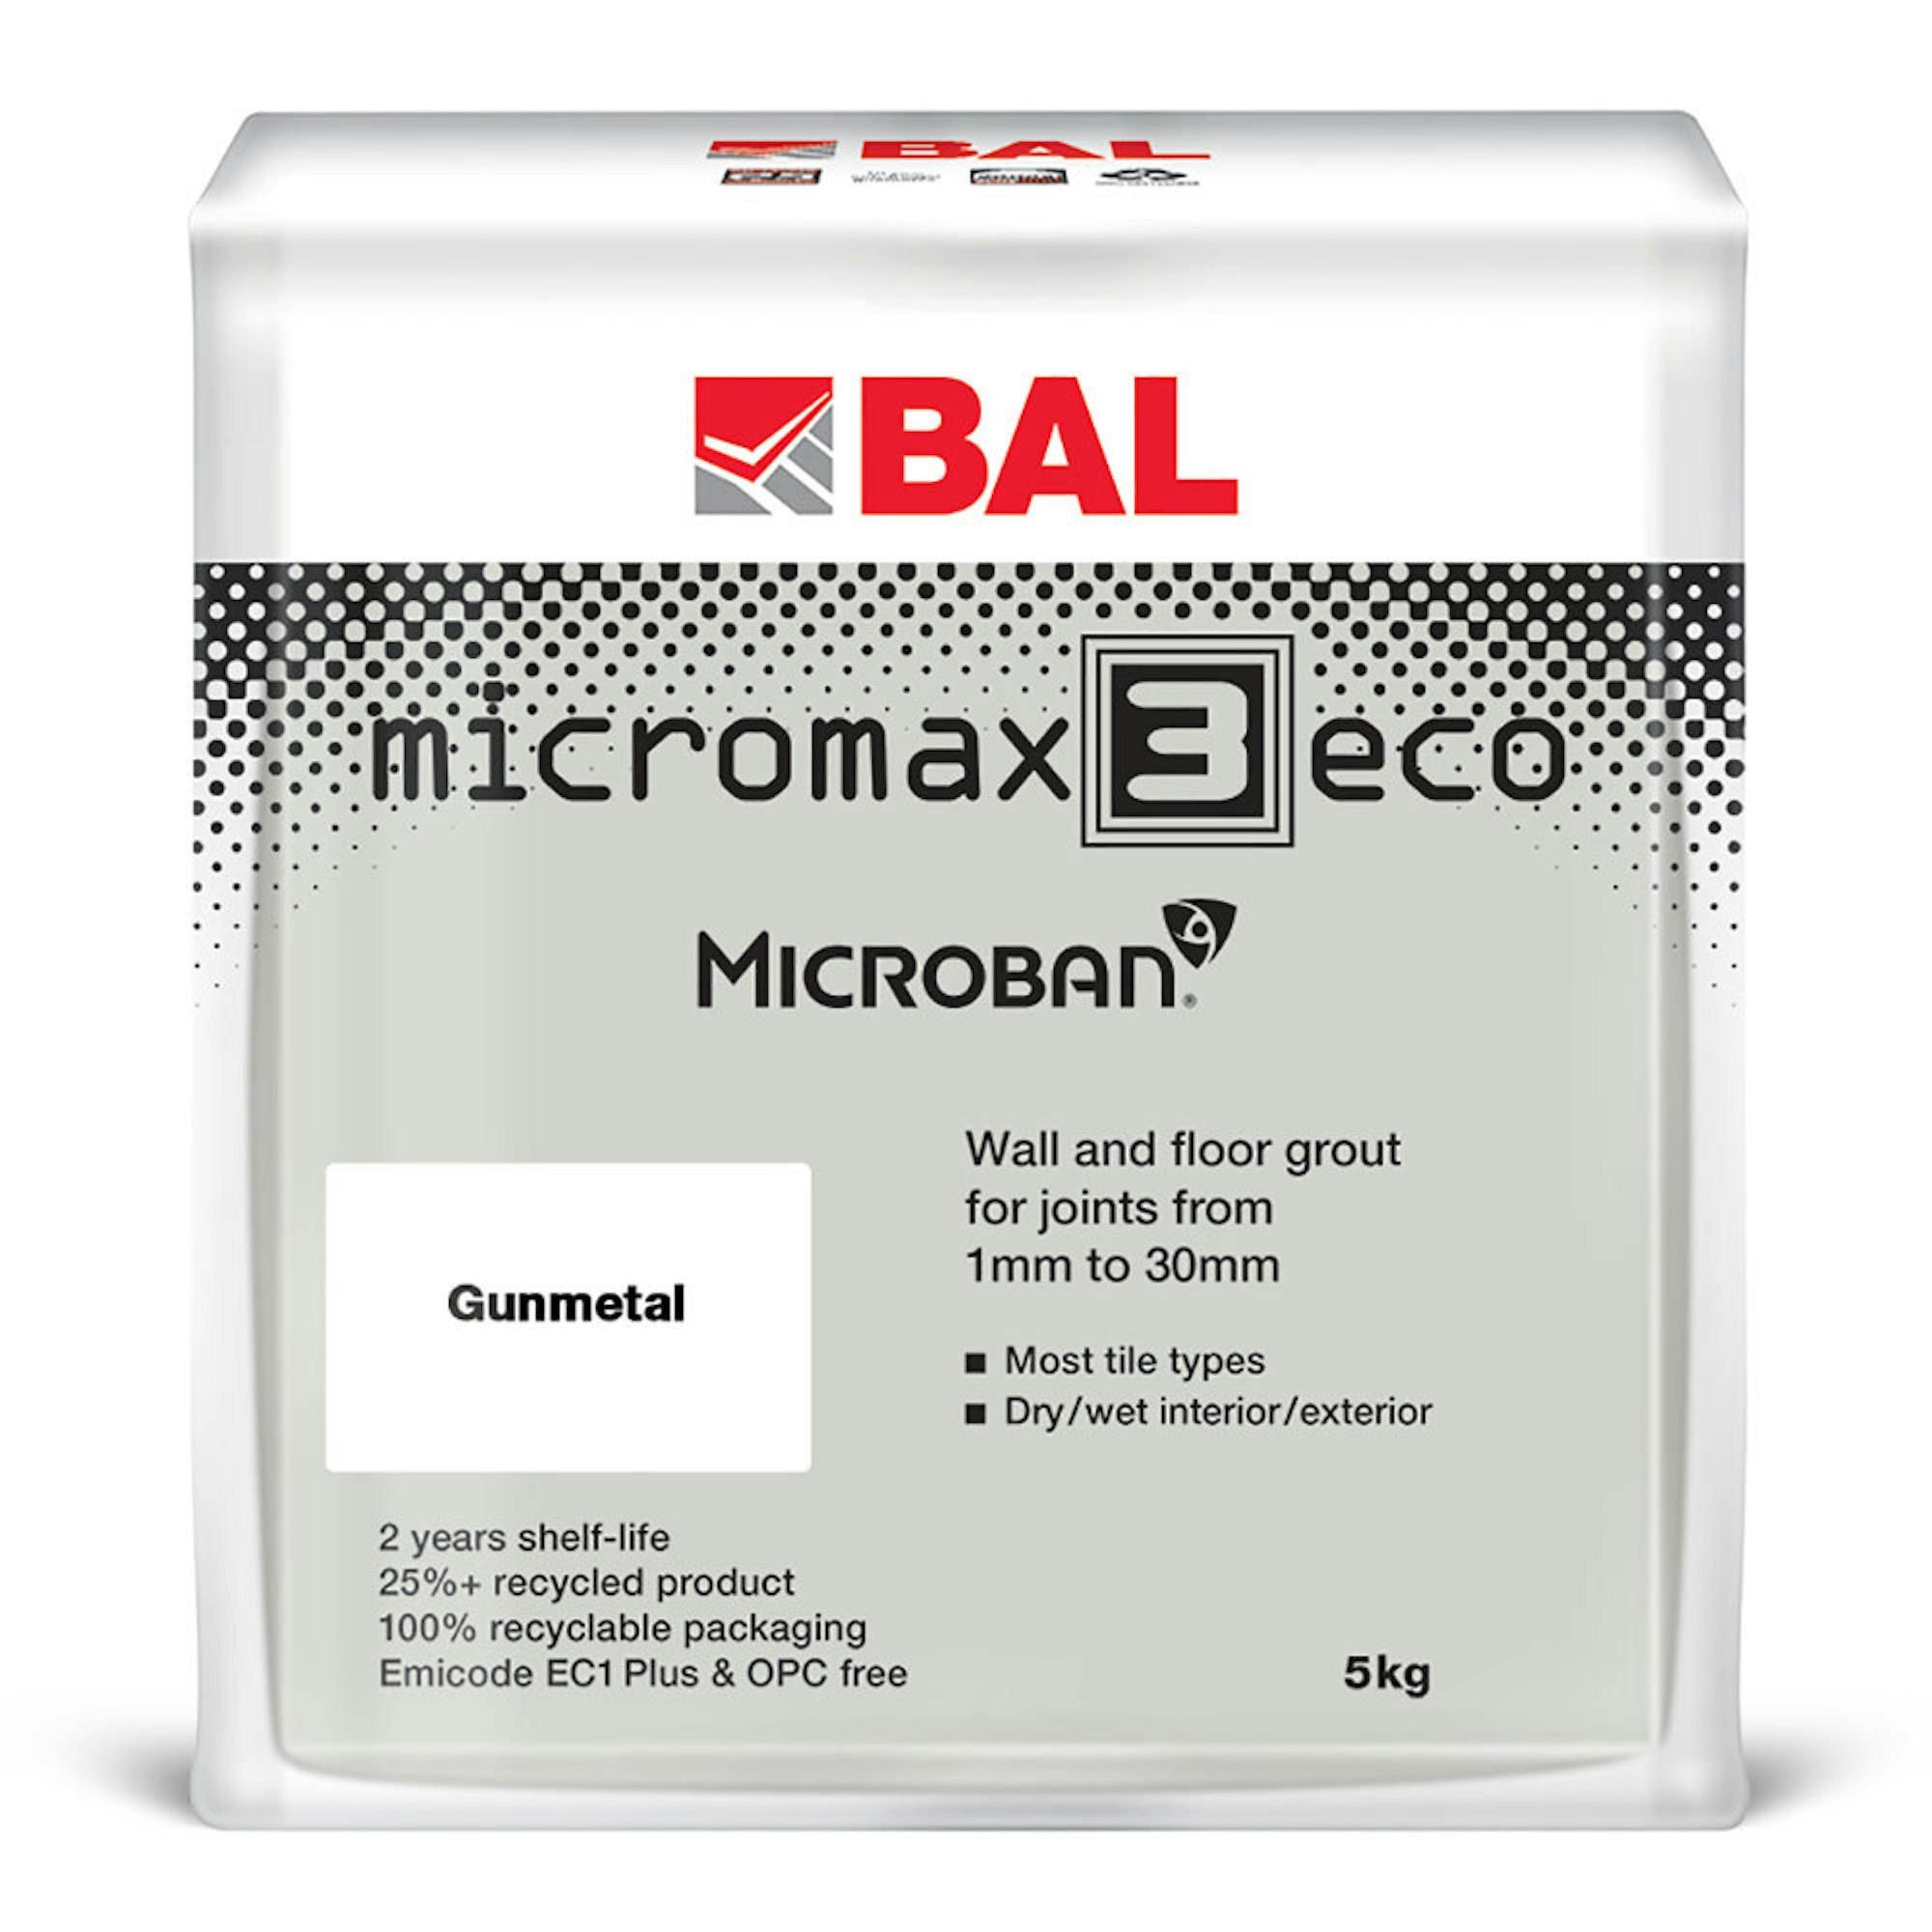 5kg BAL Micromax 3 Eco Gunmetal Grout